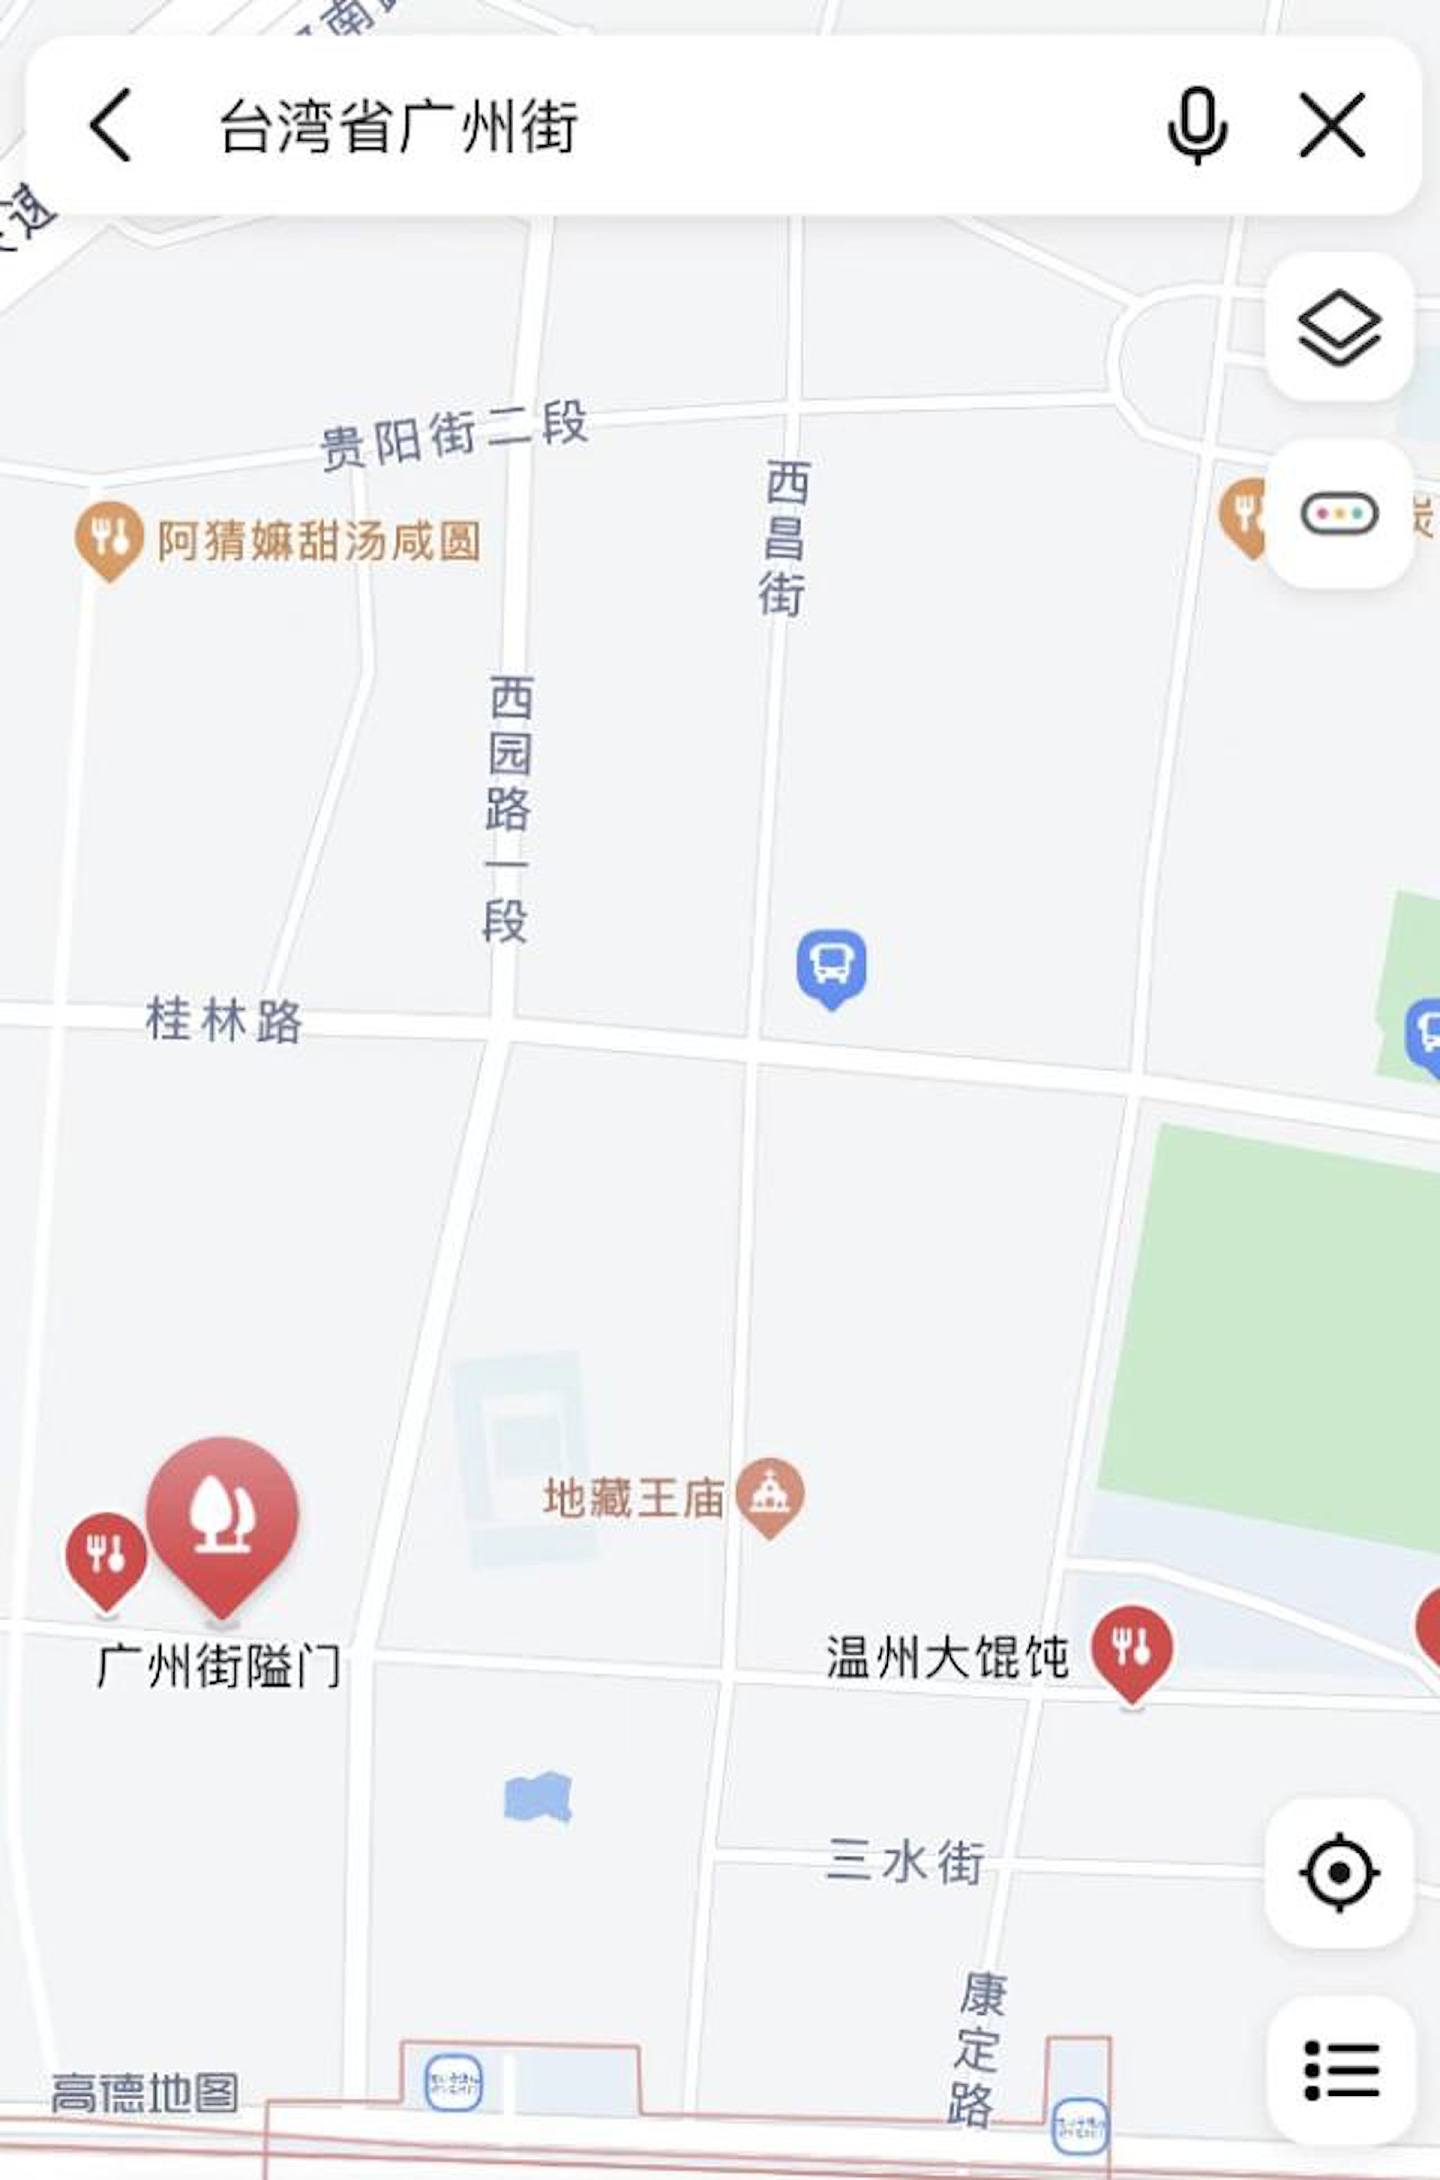 不少网民表示，现在在地图搜索台湾省，能看到完整显示的台湾地图，「精确到街道红绿灯」。 （微博）